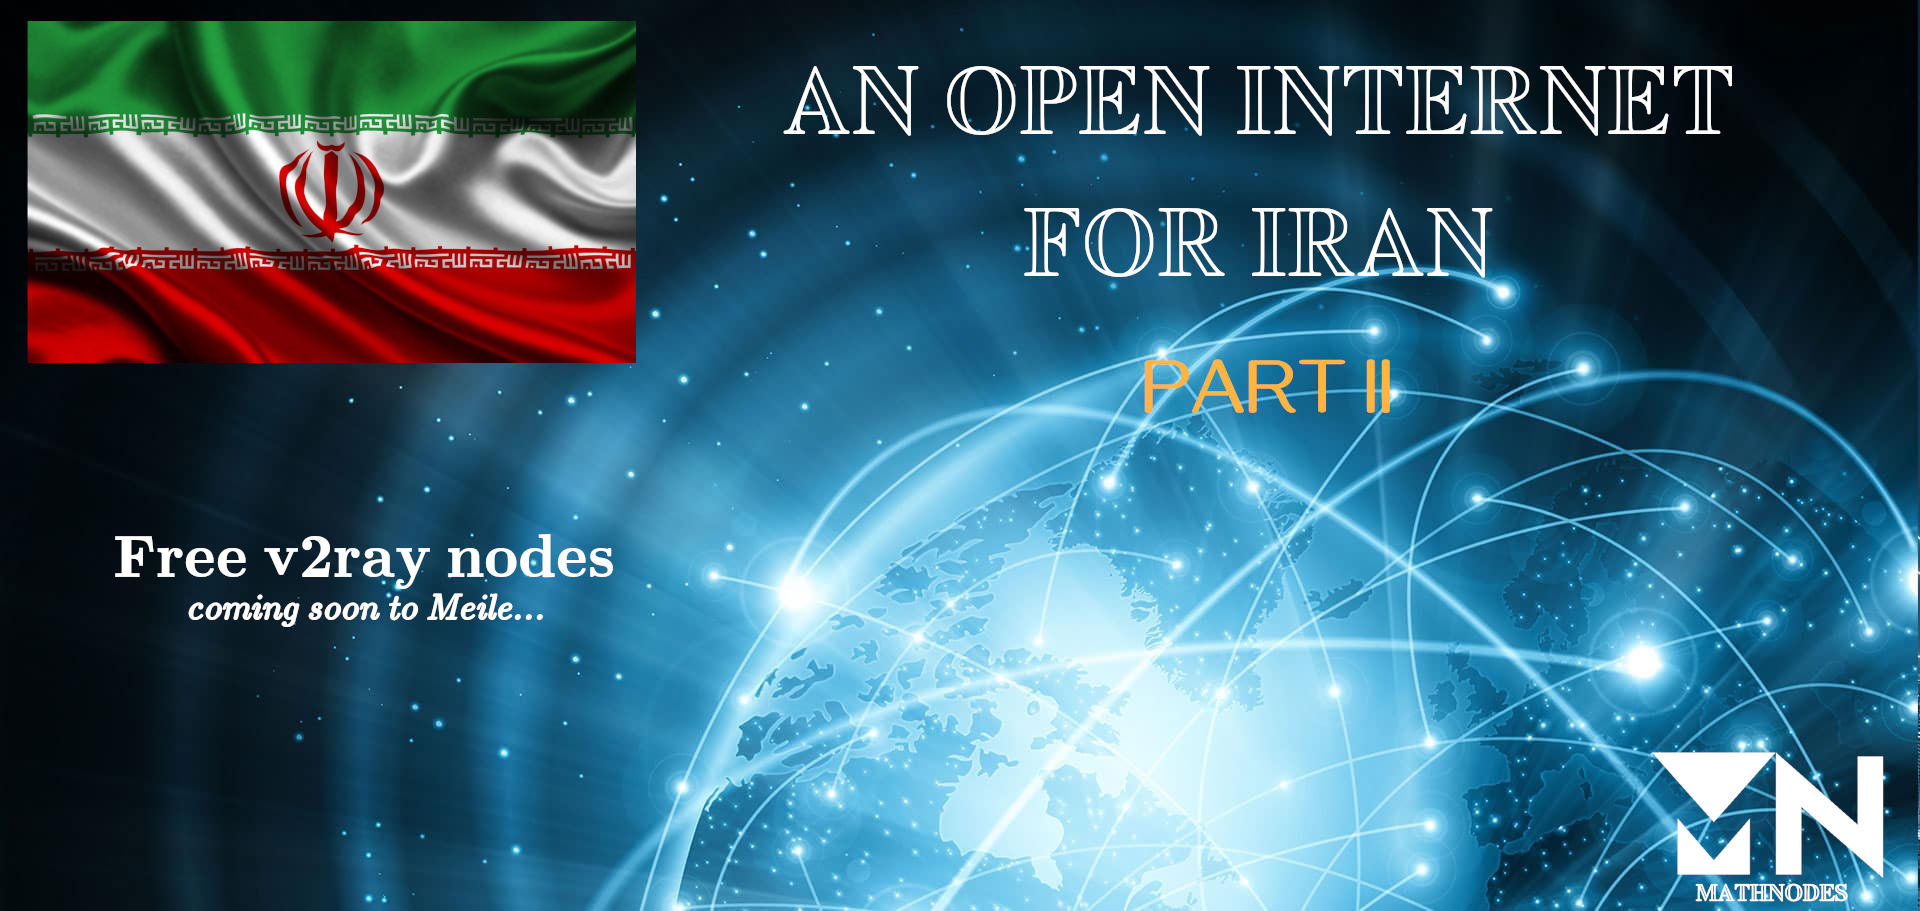 AN OPEN INTERNET FOR IRAN, PART 2